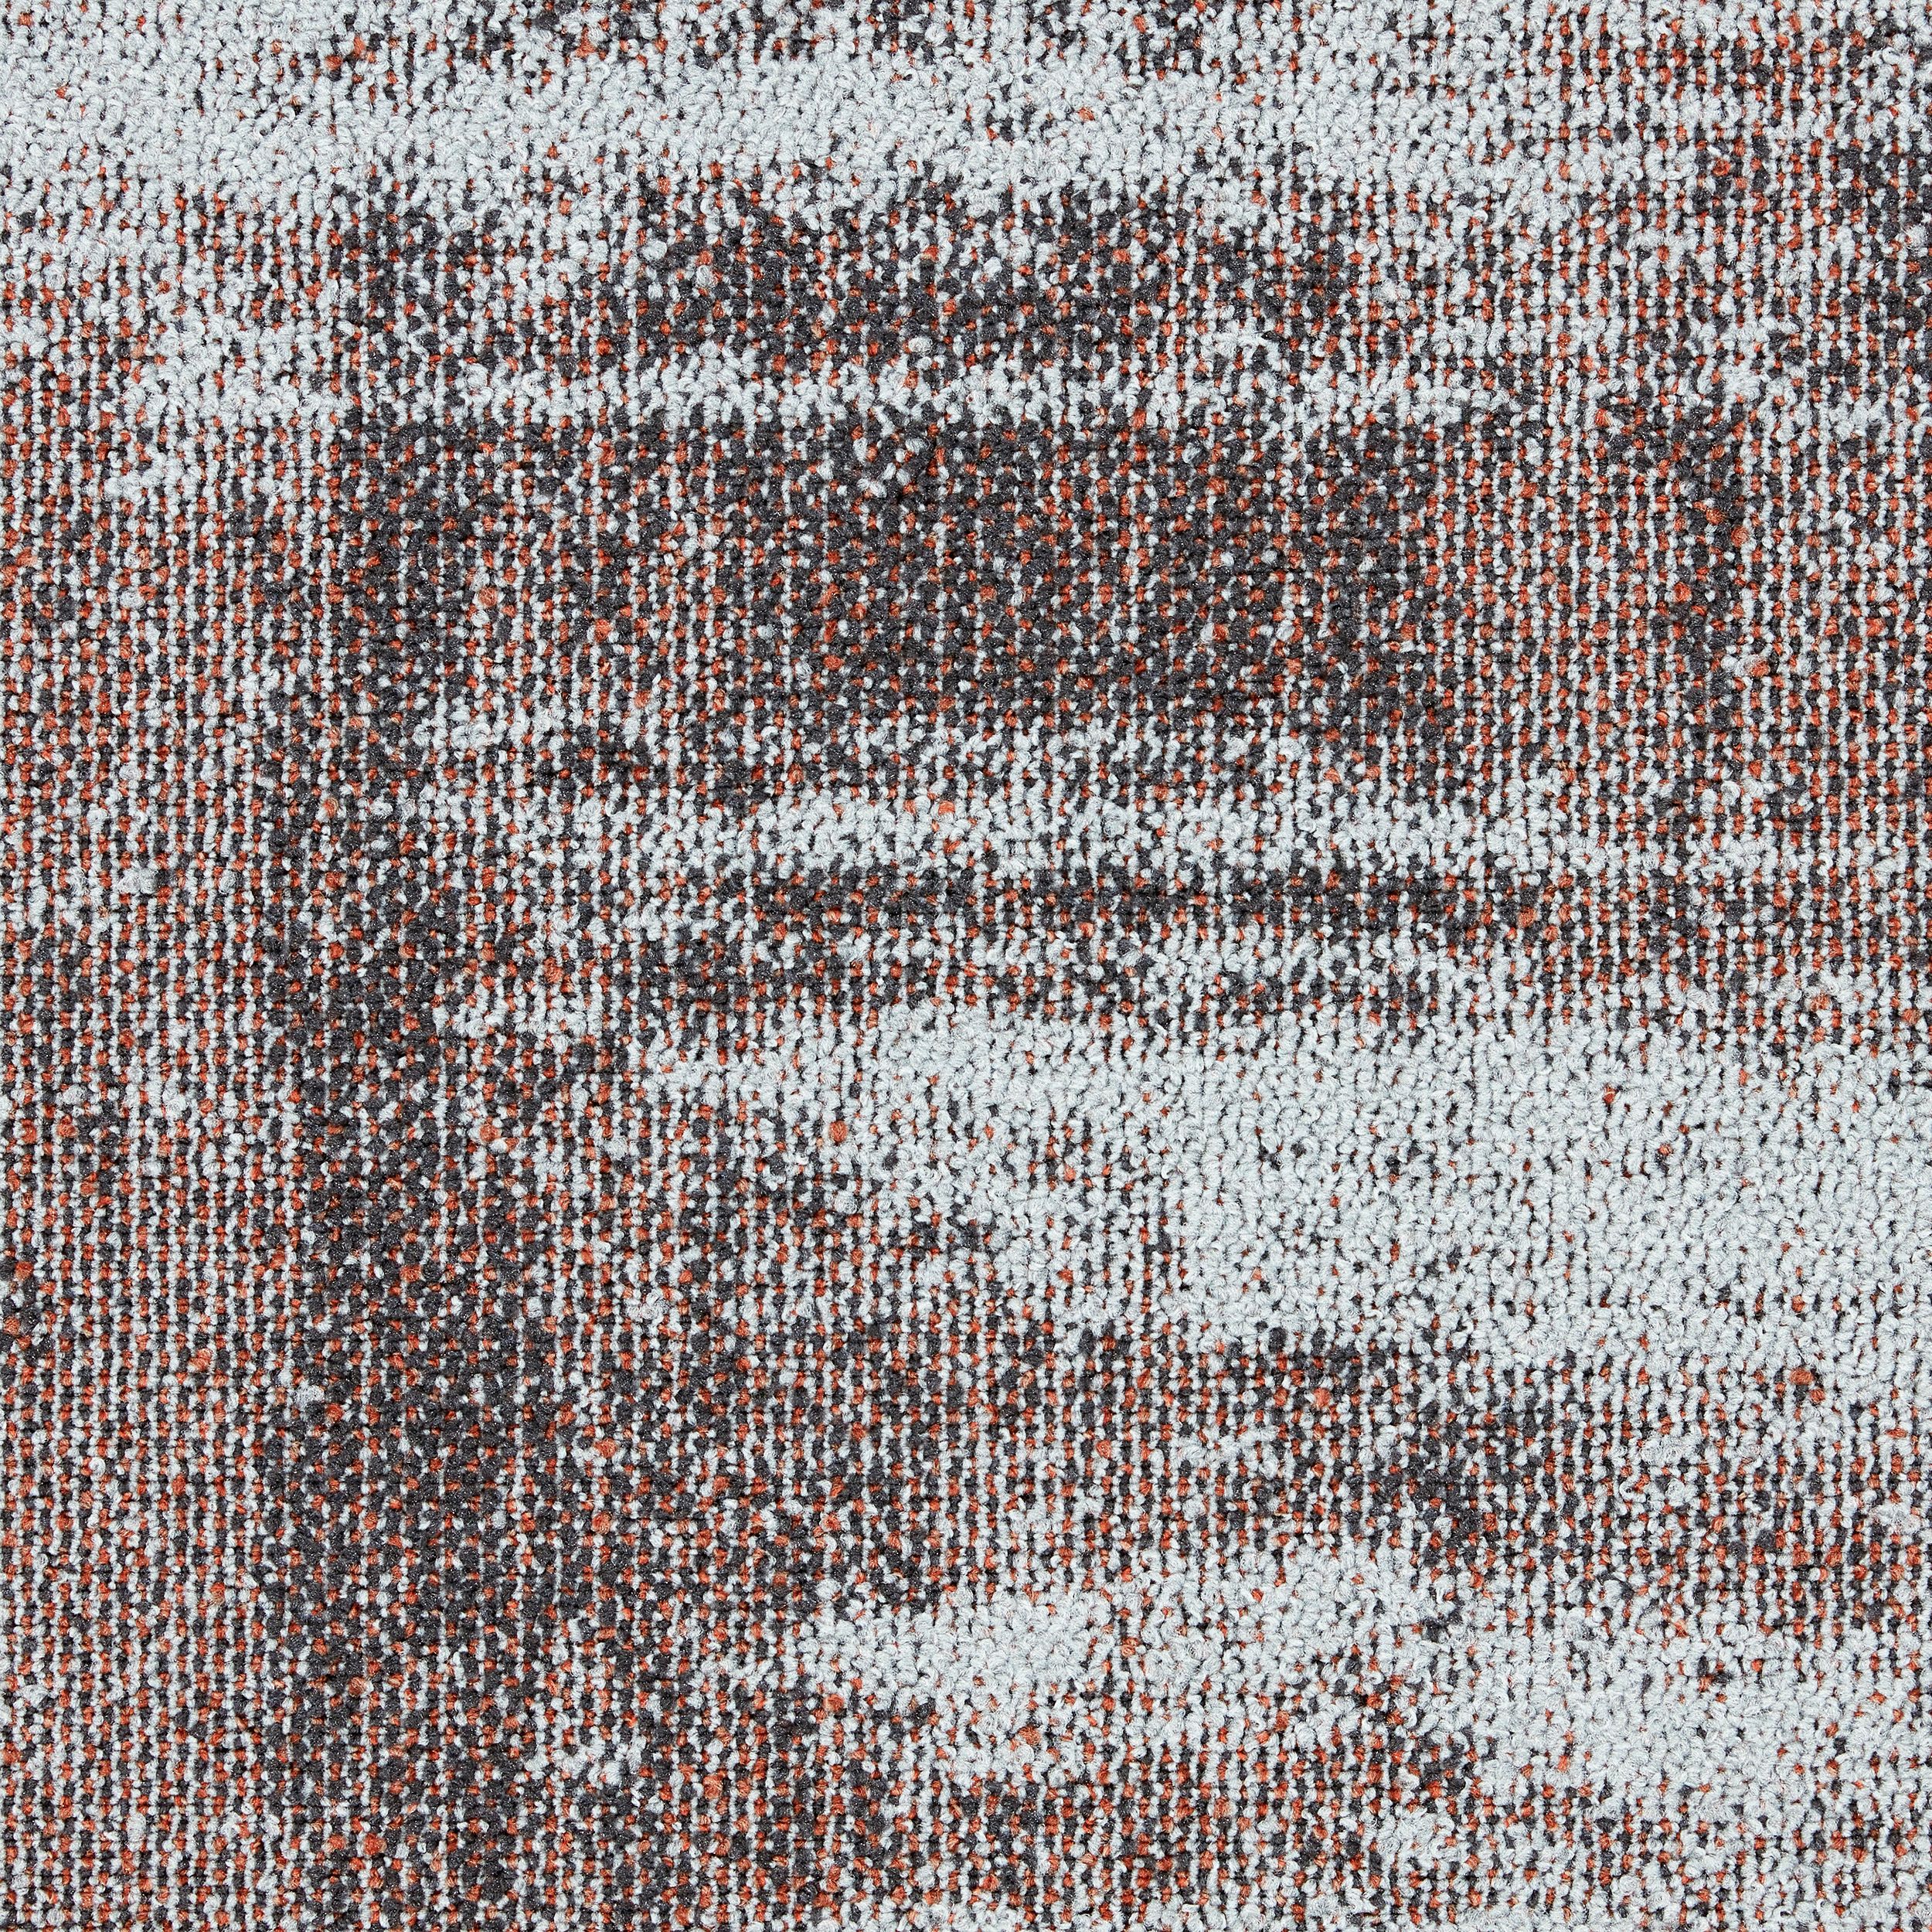 Works Effect Carpet Tile in Canyon número de imagen 2